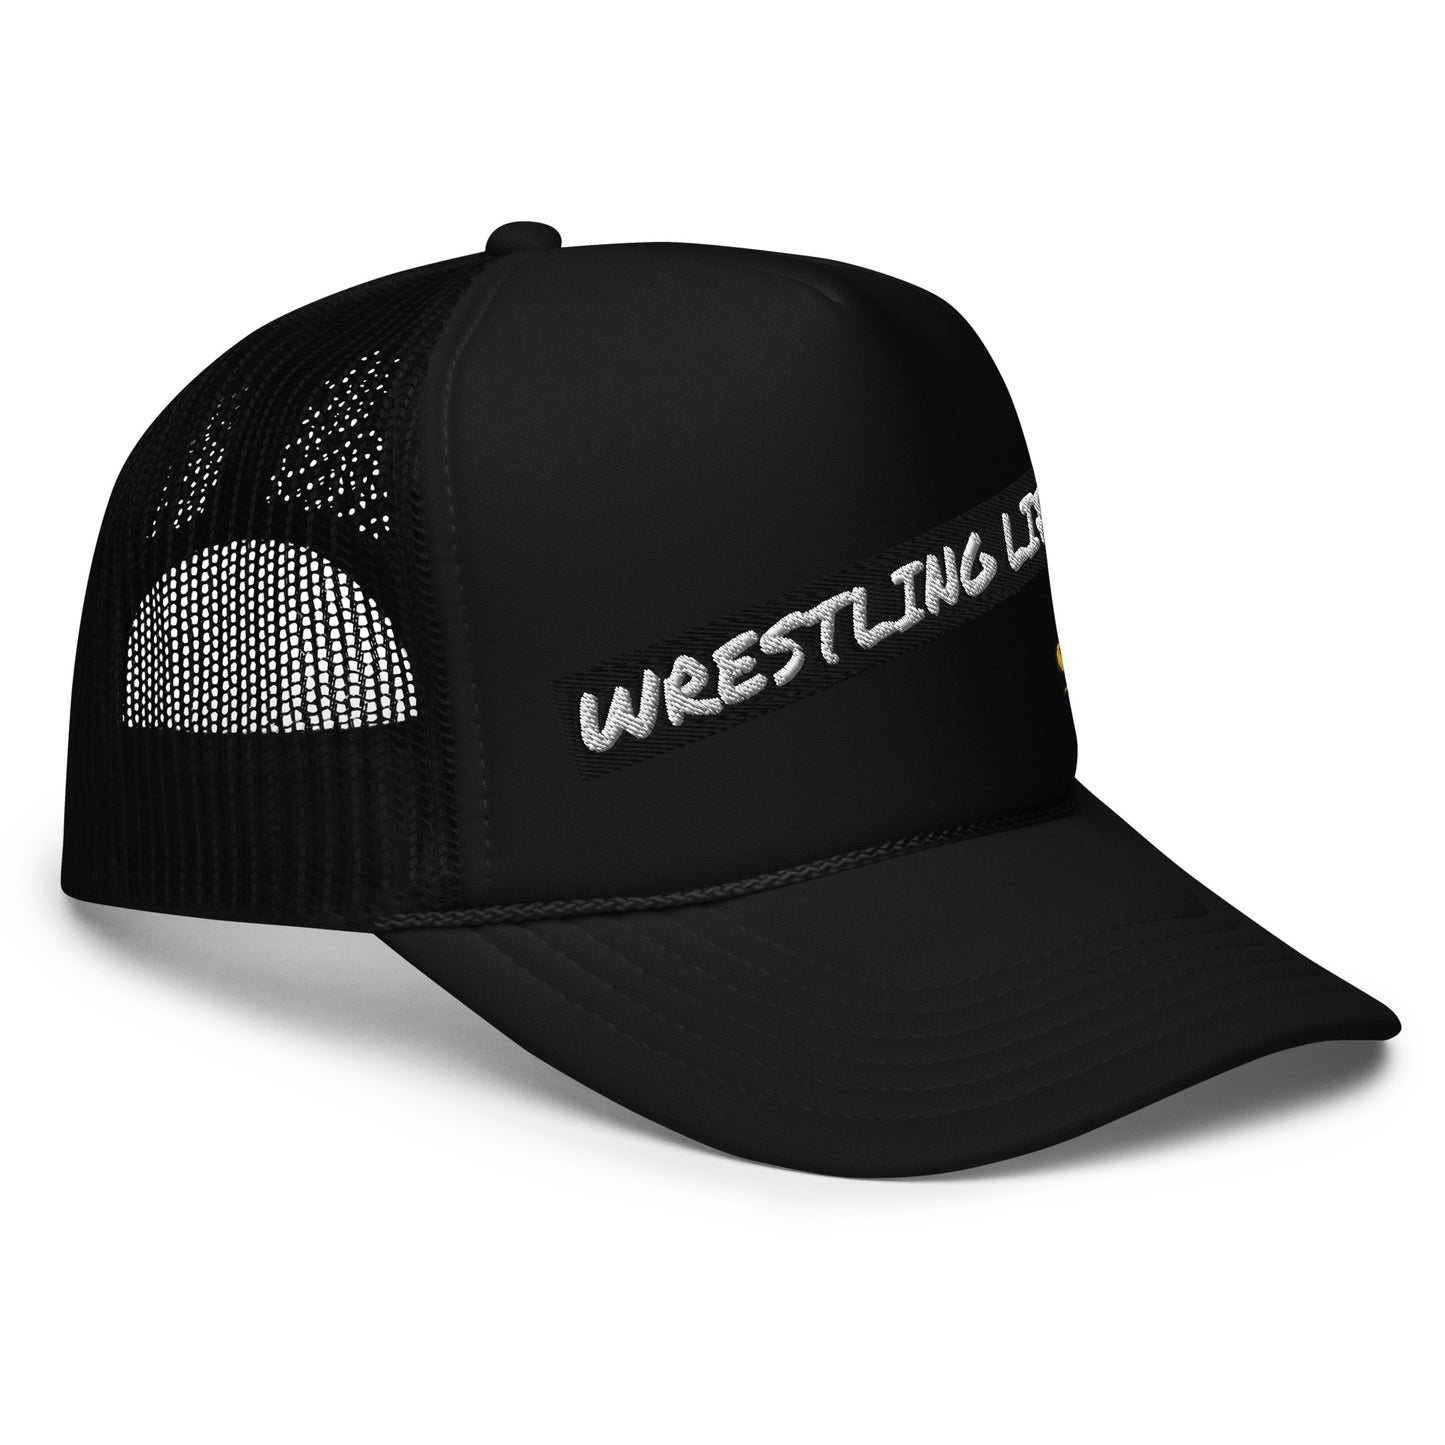 Wrestling Life 954 Signature hat